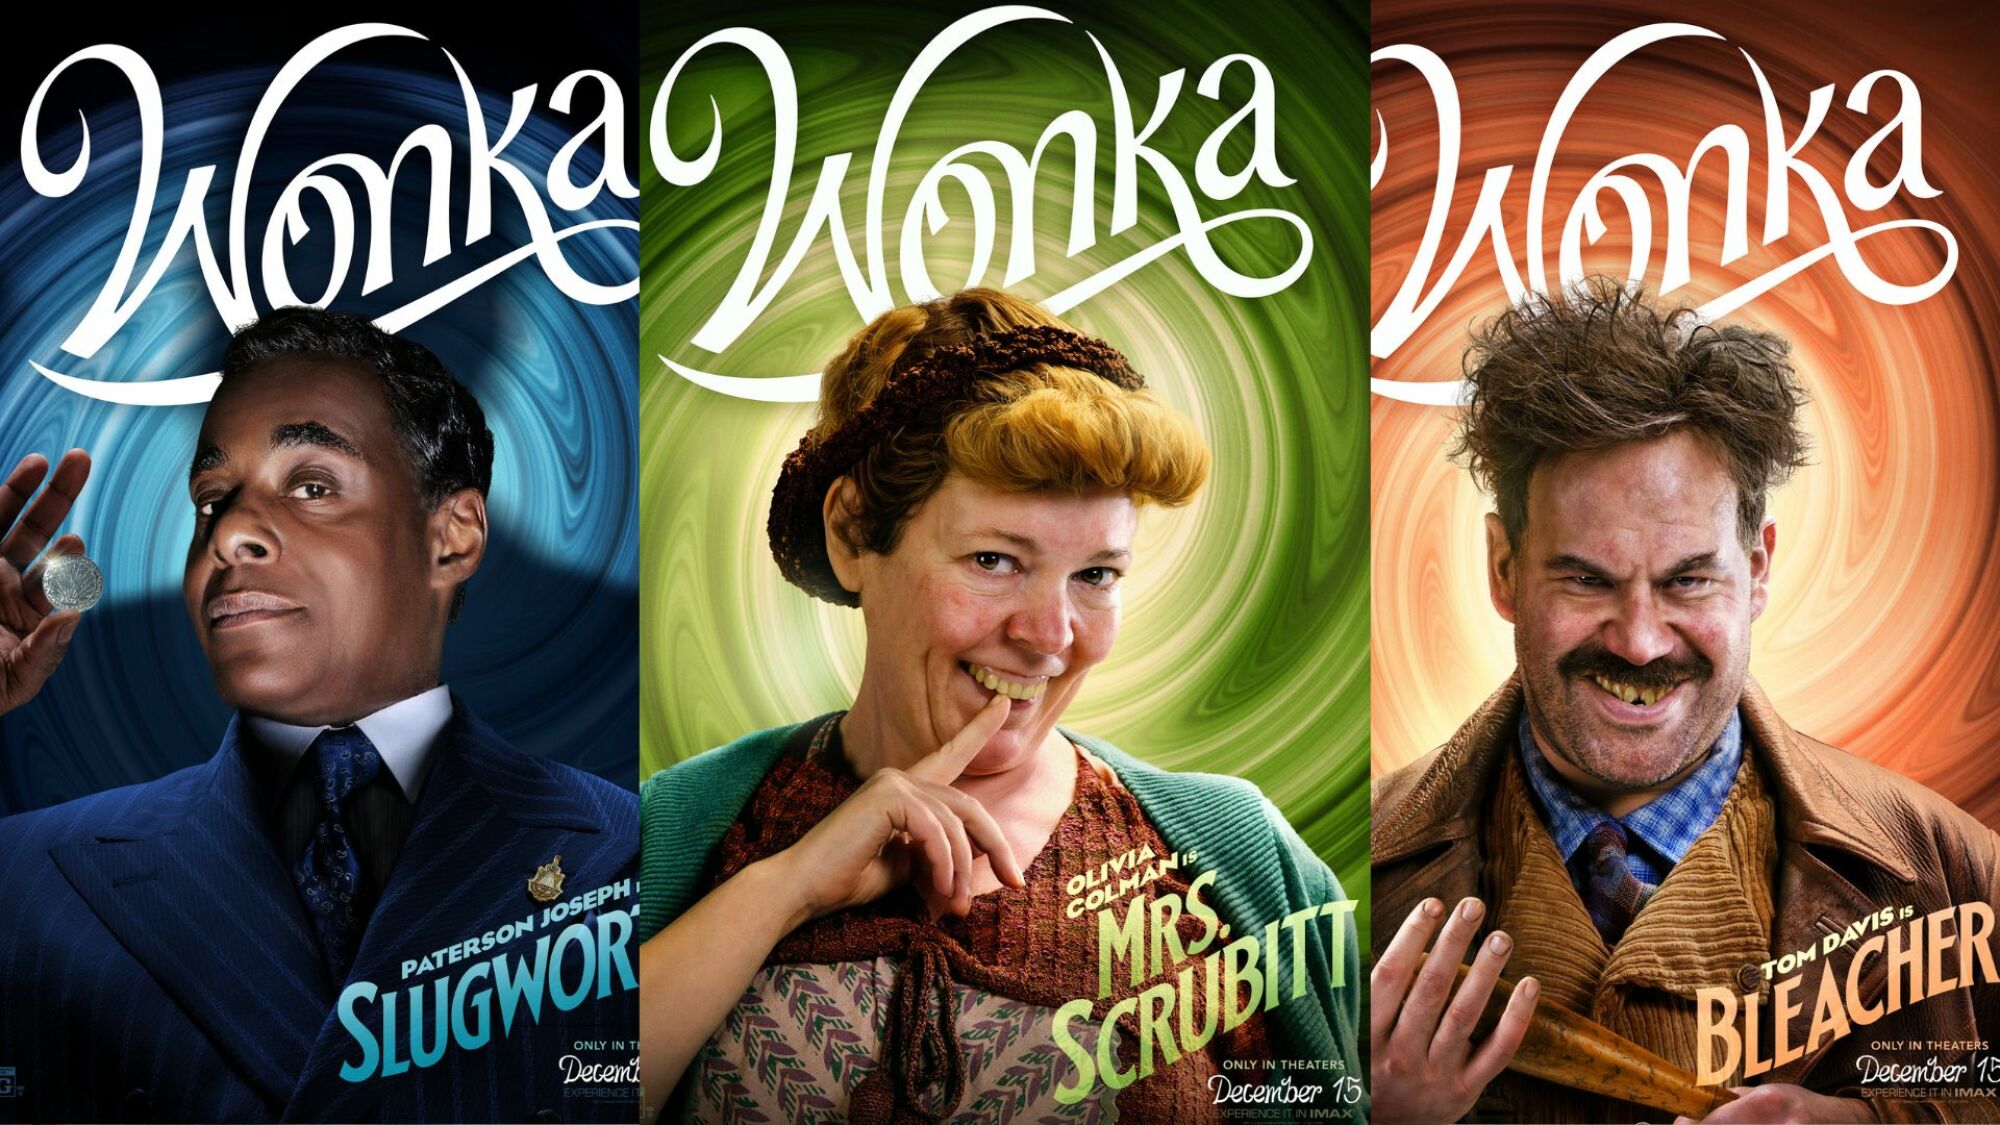 Affiche promotionnelle pour Wonka en collage